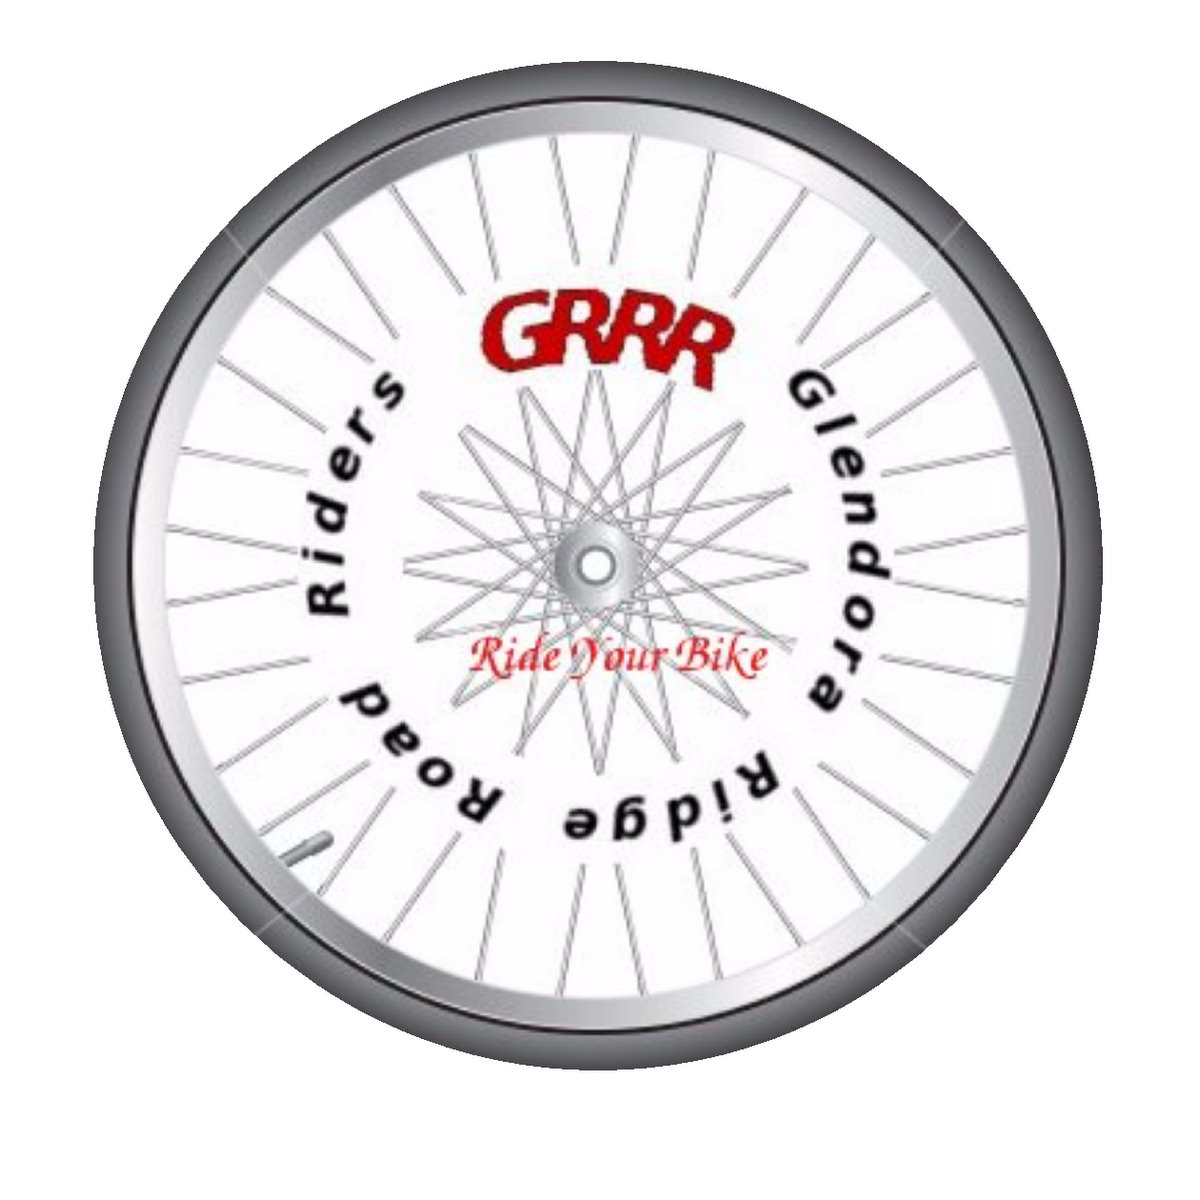 GRRR logo